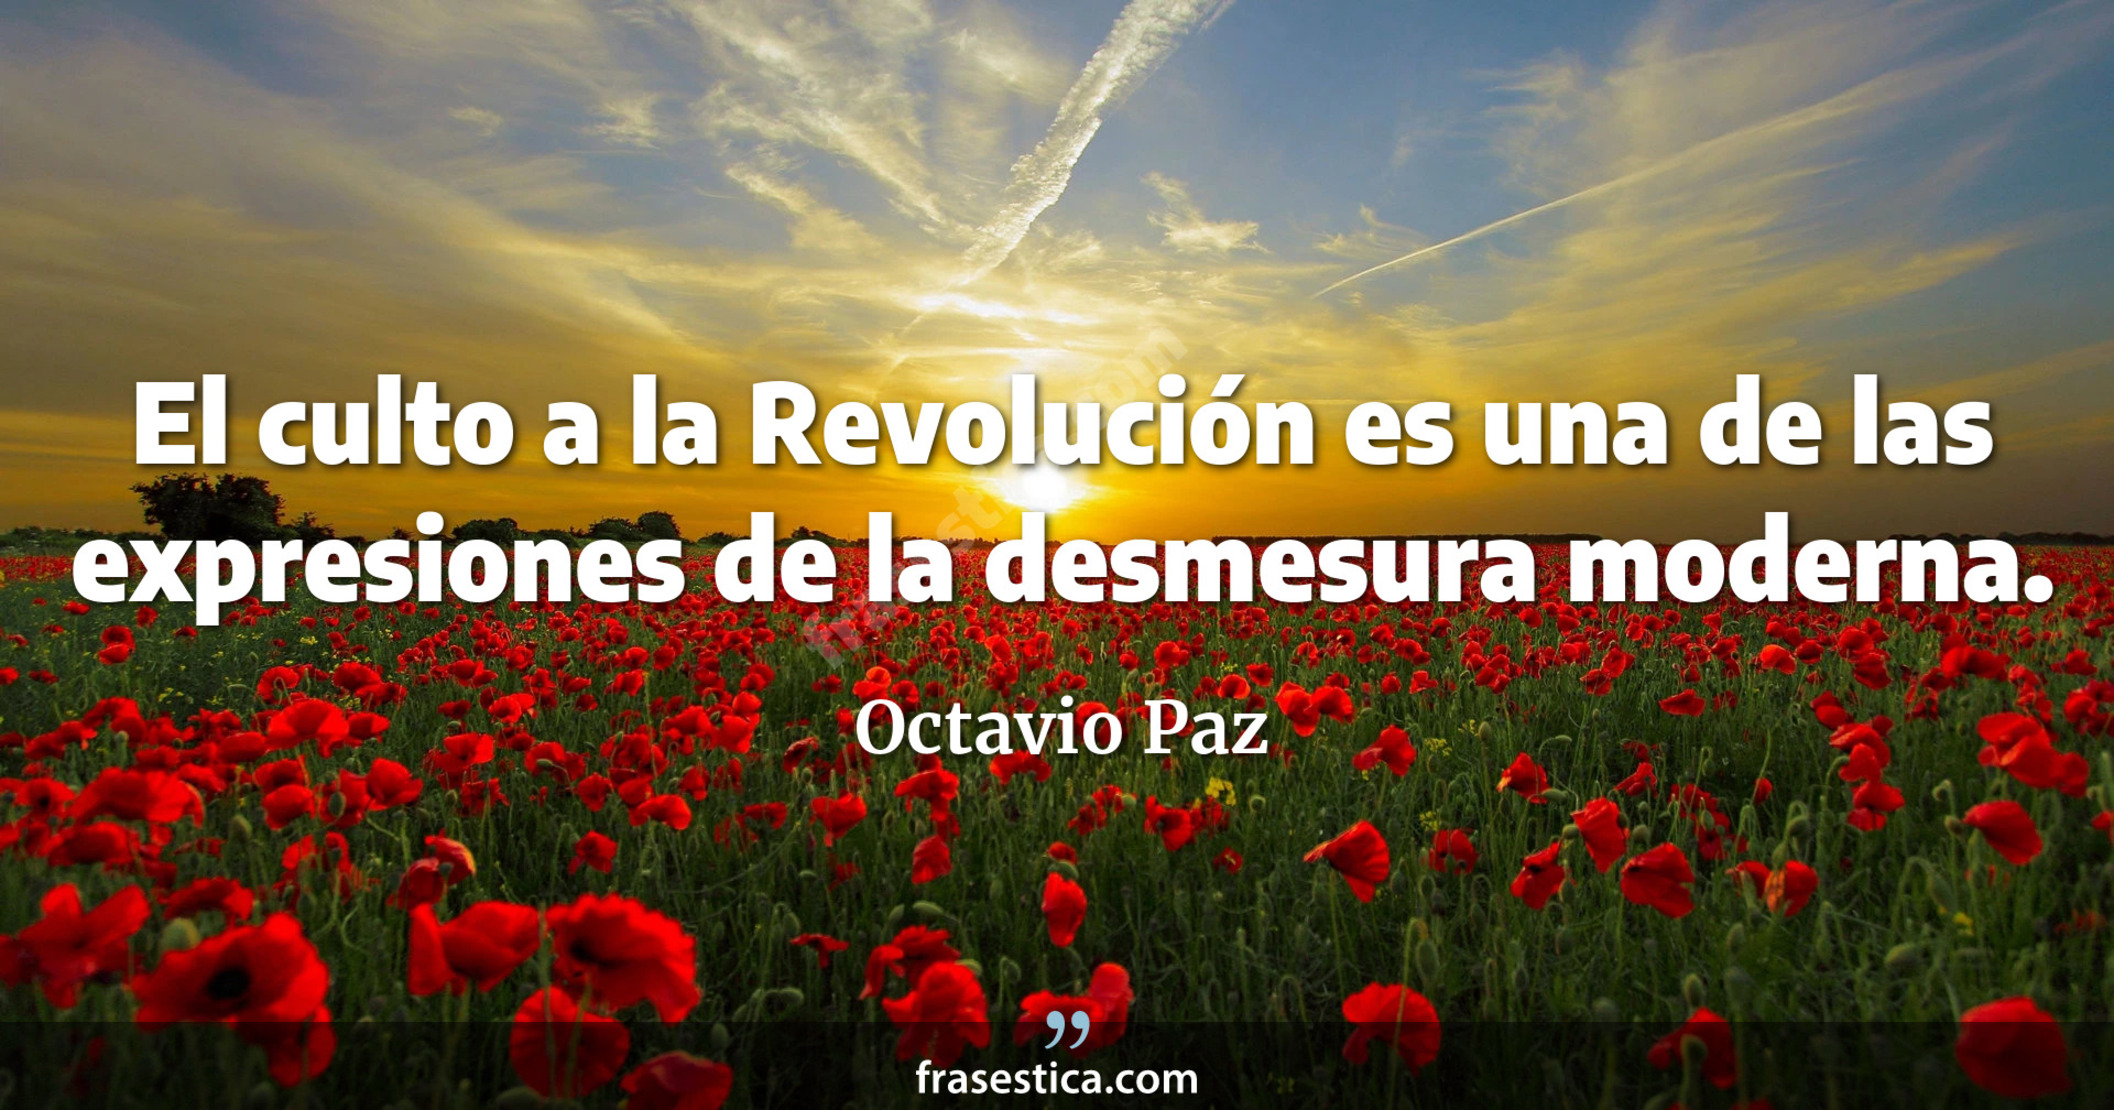 El culto a la Revolución es una de las expresiones de la desmesura moderna. - Octavio Paz